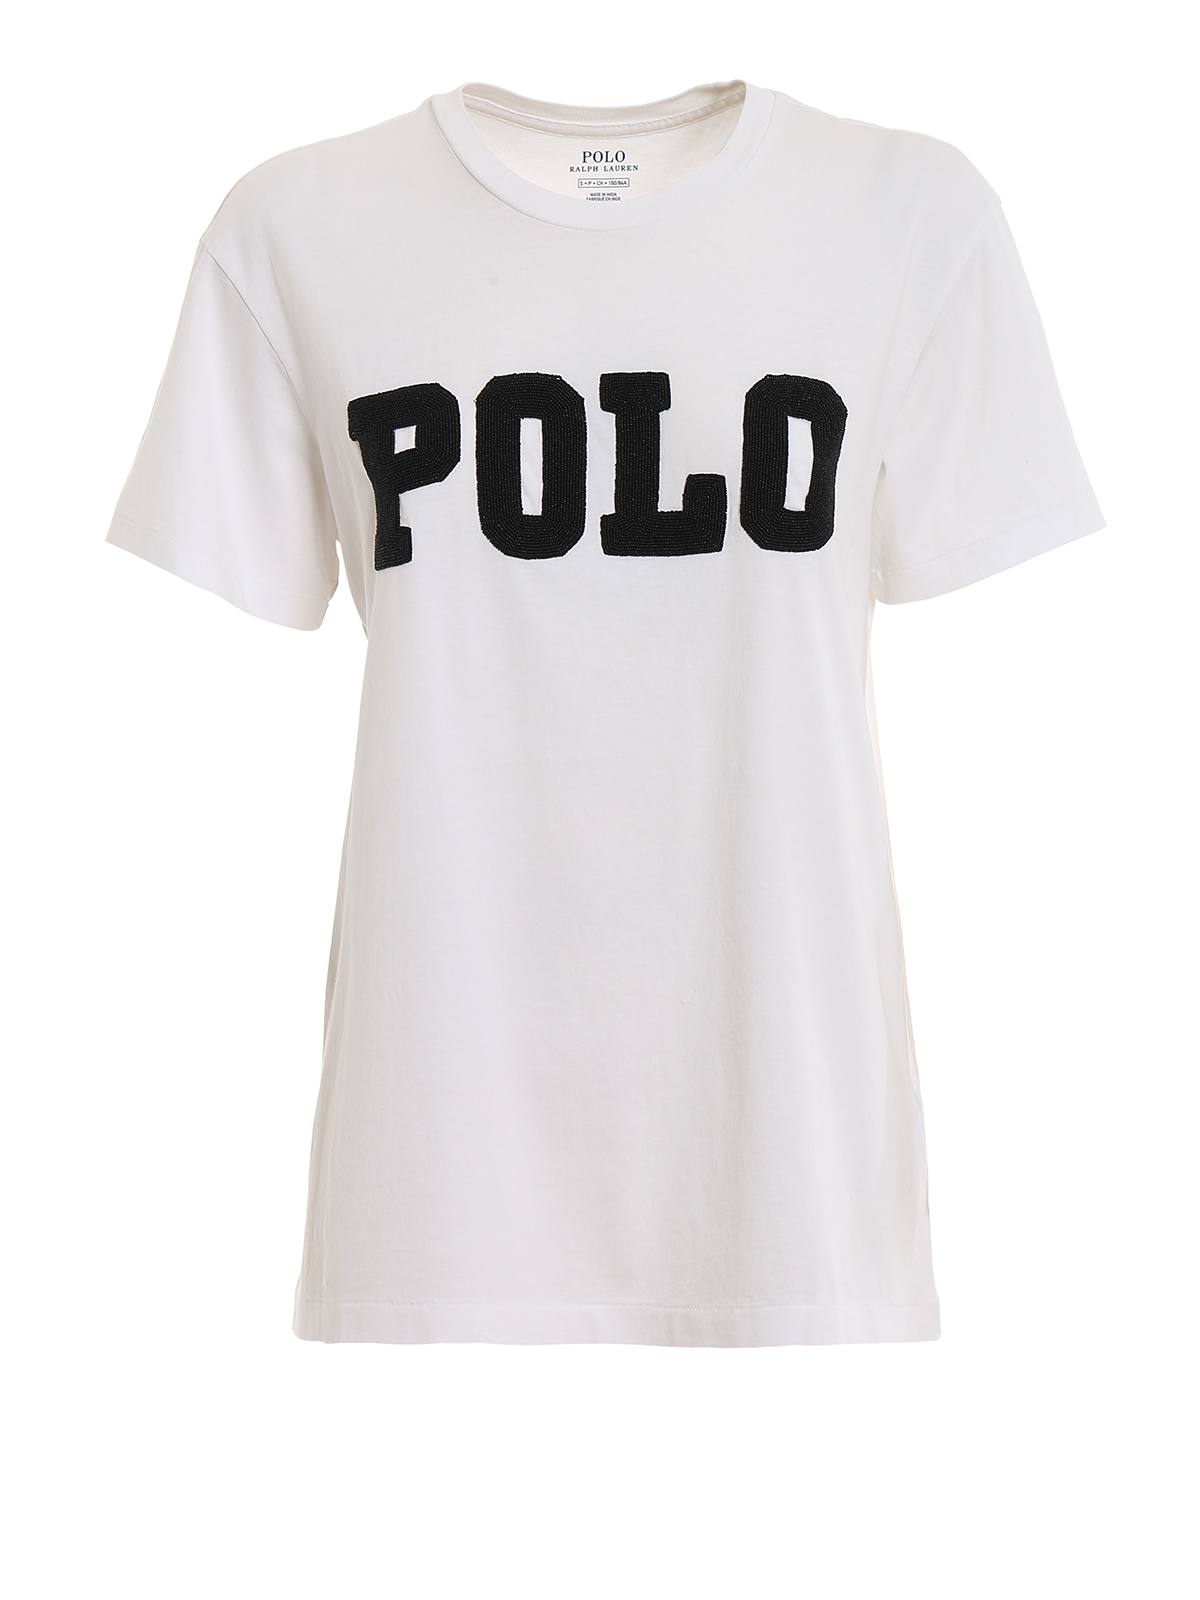 polo ralph lauren t shirts for women